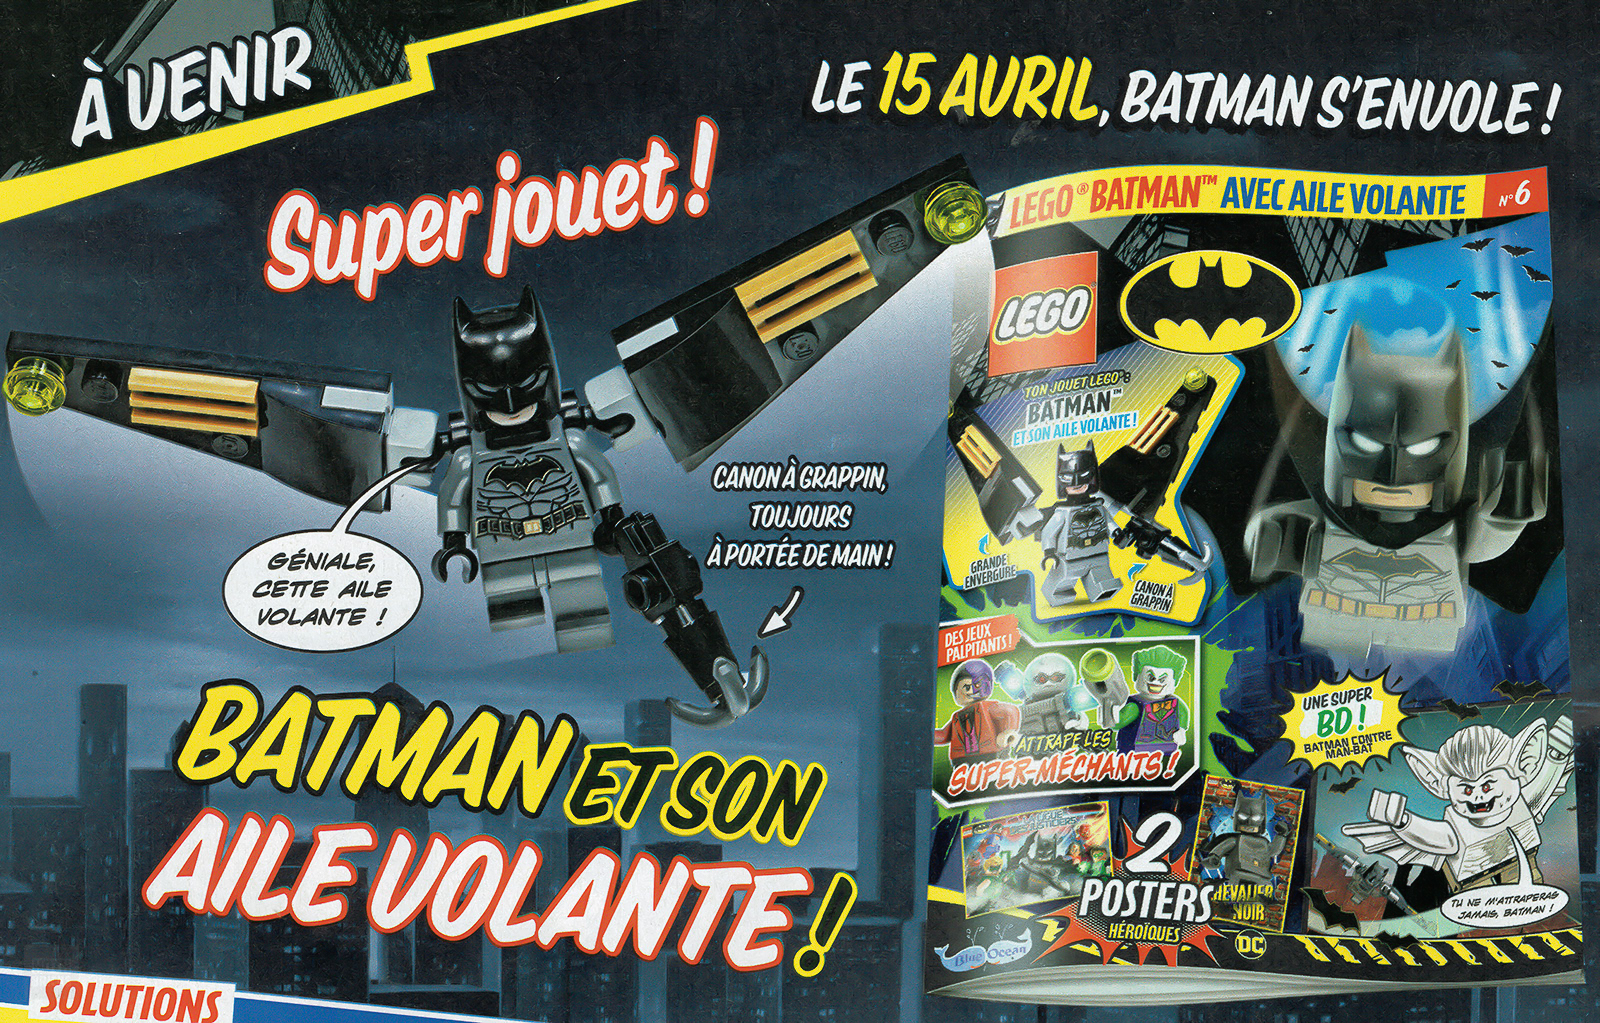 ▻ Trên sạp báo: Số tháng 2022 năm XNUMX của Tạp chí LEGO Batman chính thức  - GẠCH HOTH